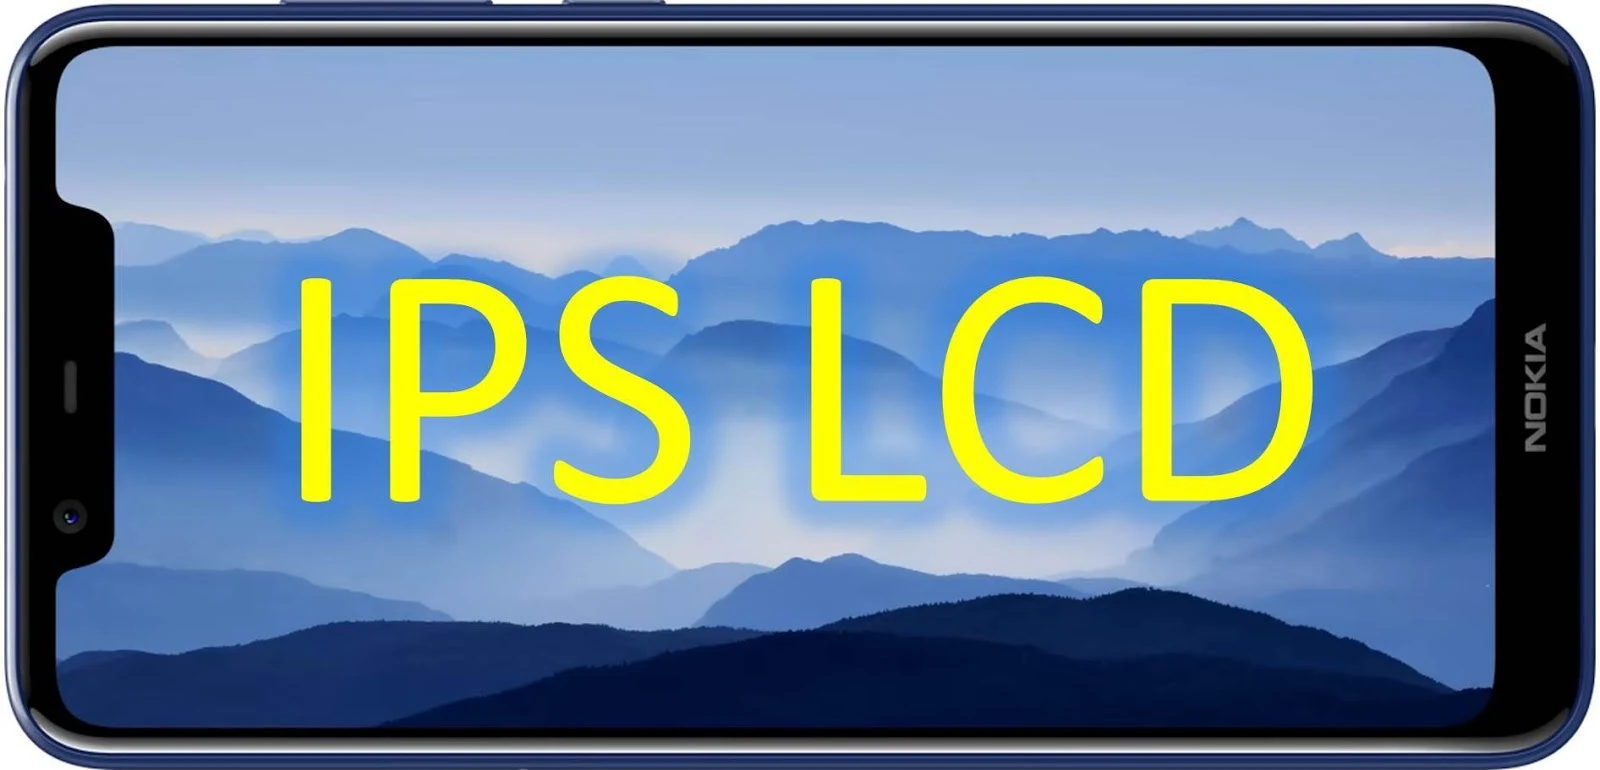 IPS LCD handphone smartphone